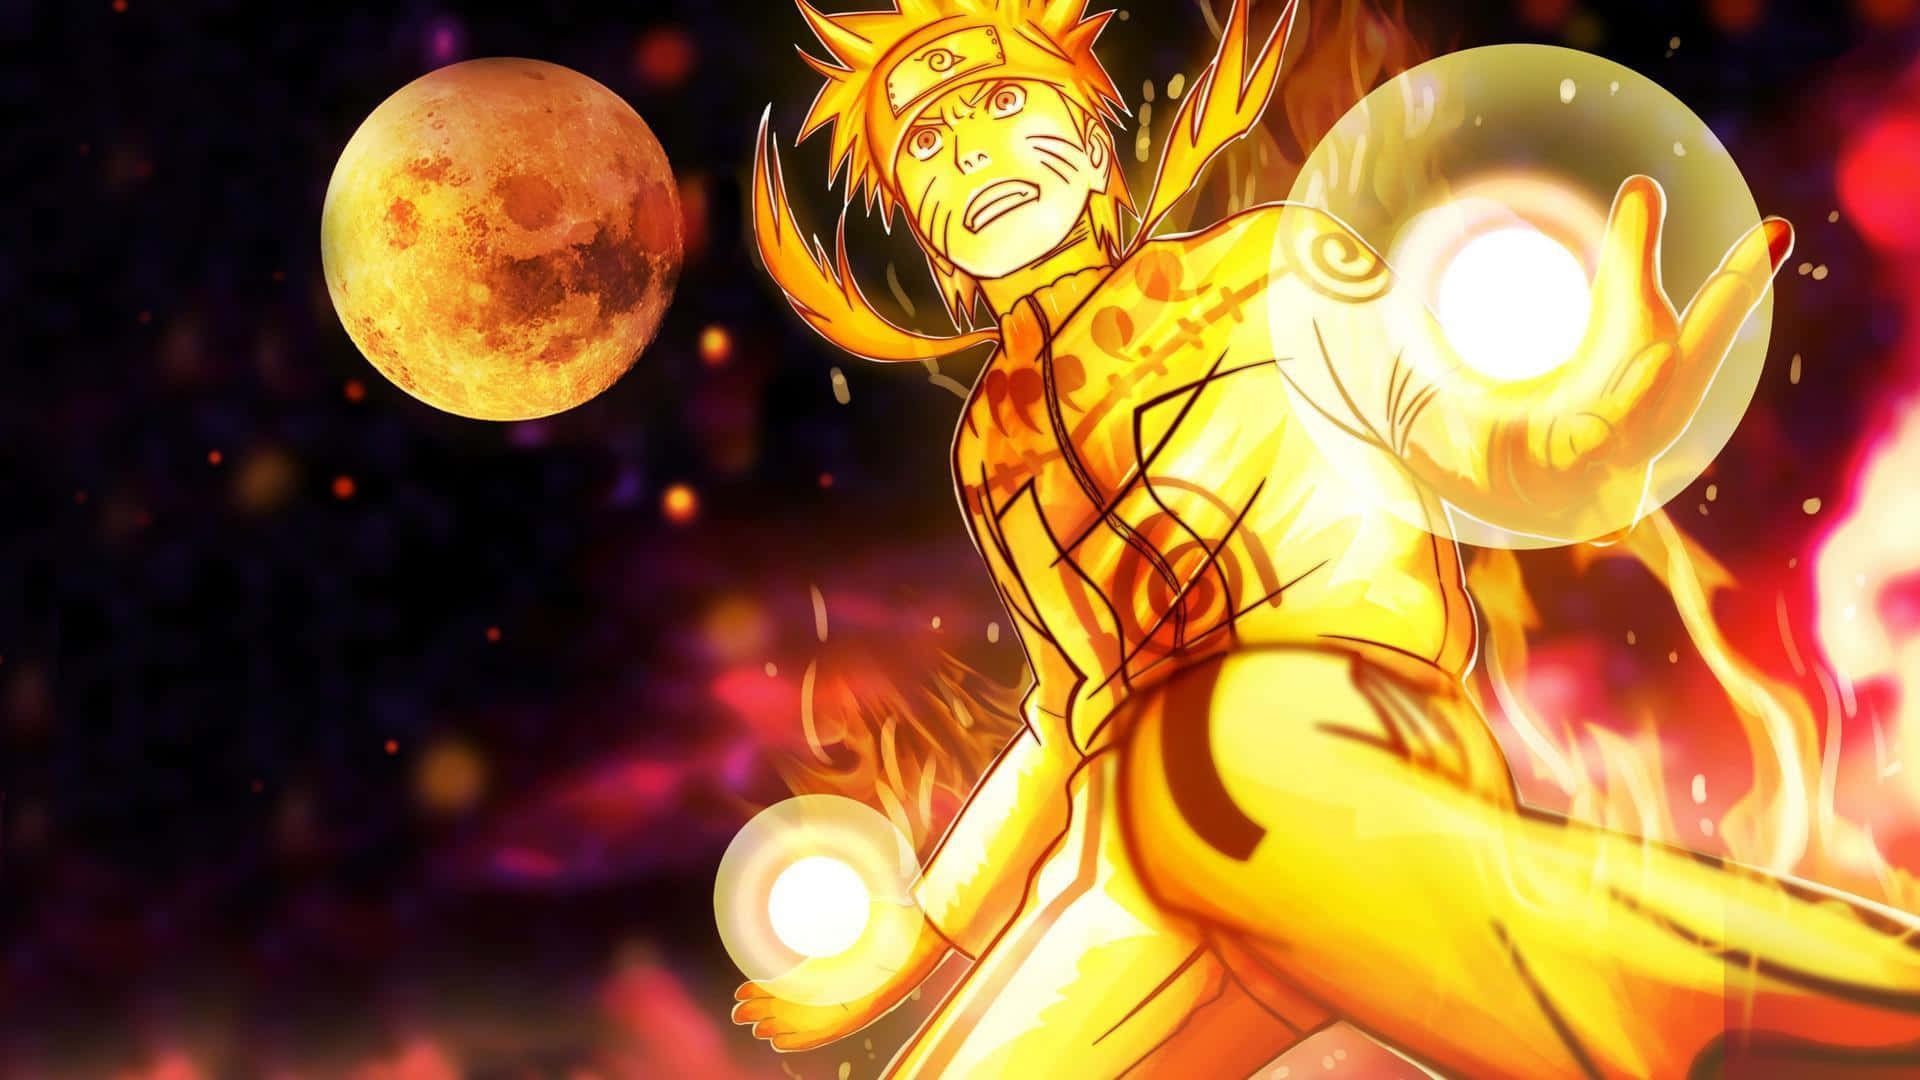 Einüberaus Mächtiger Naruto Uzumaki Entfesselt Seine Wut, Als Er Jemanden Konfrontiert. Wallpaper